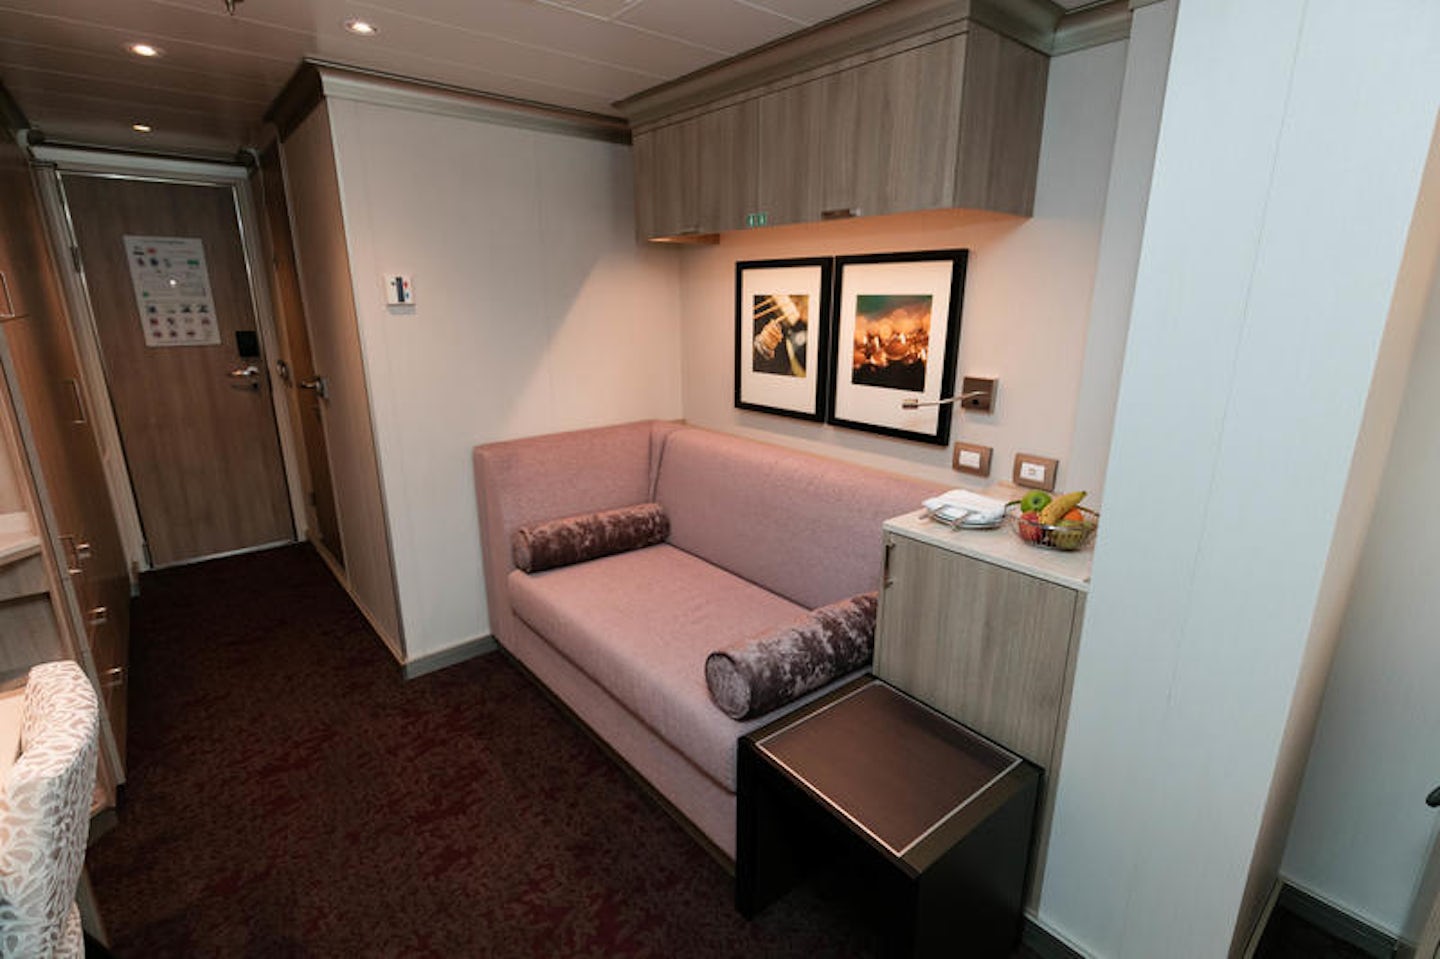 The Vista Suite on Koningsdam